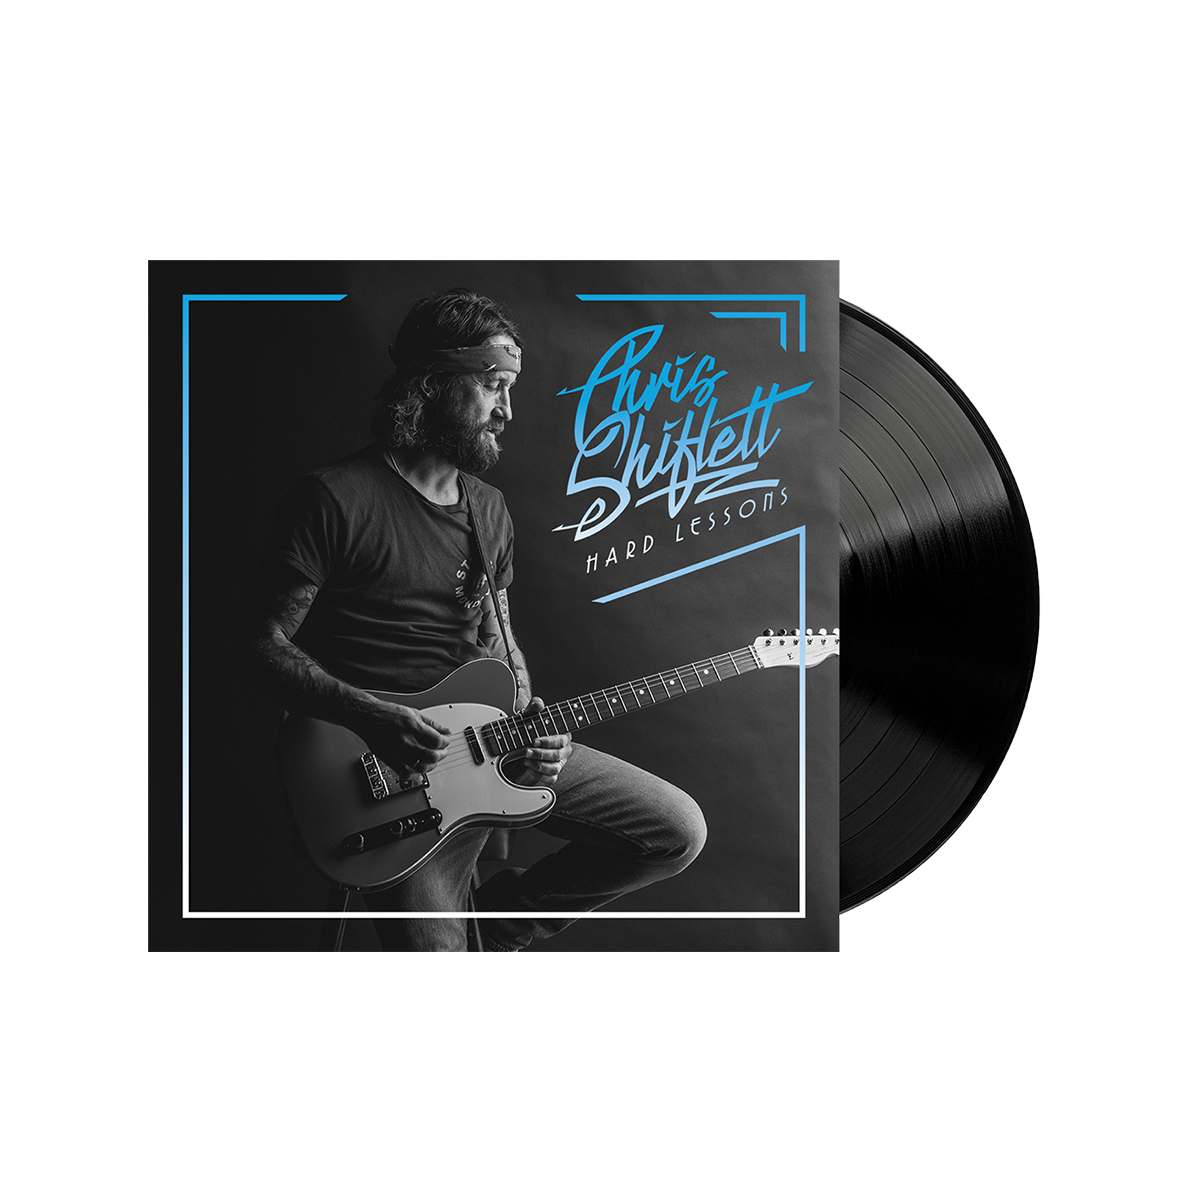 Signed Hard Lessons Vinyl - Chris Shiflett